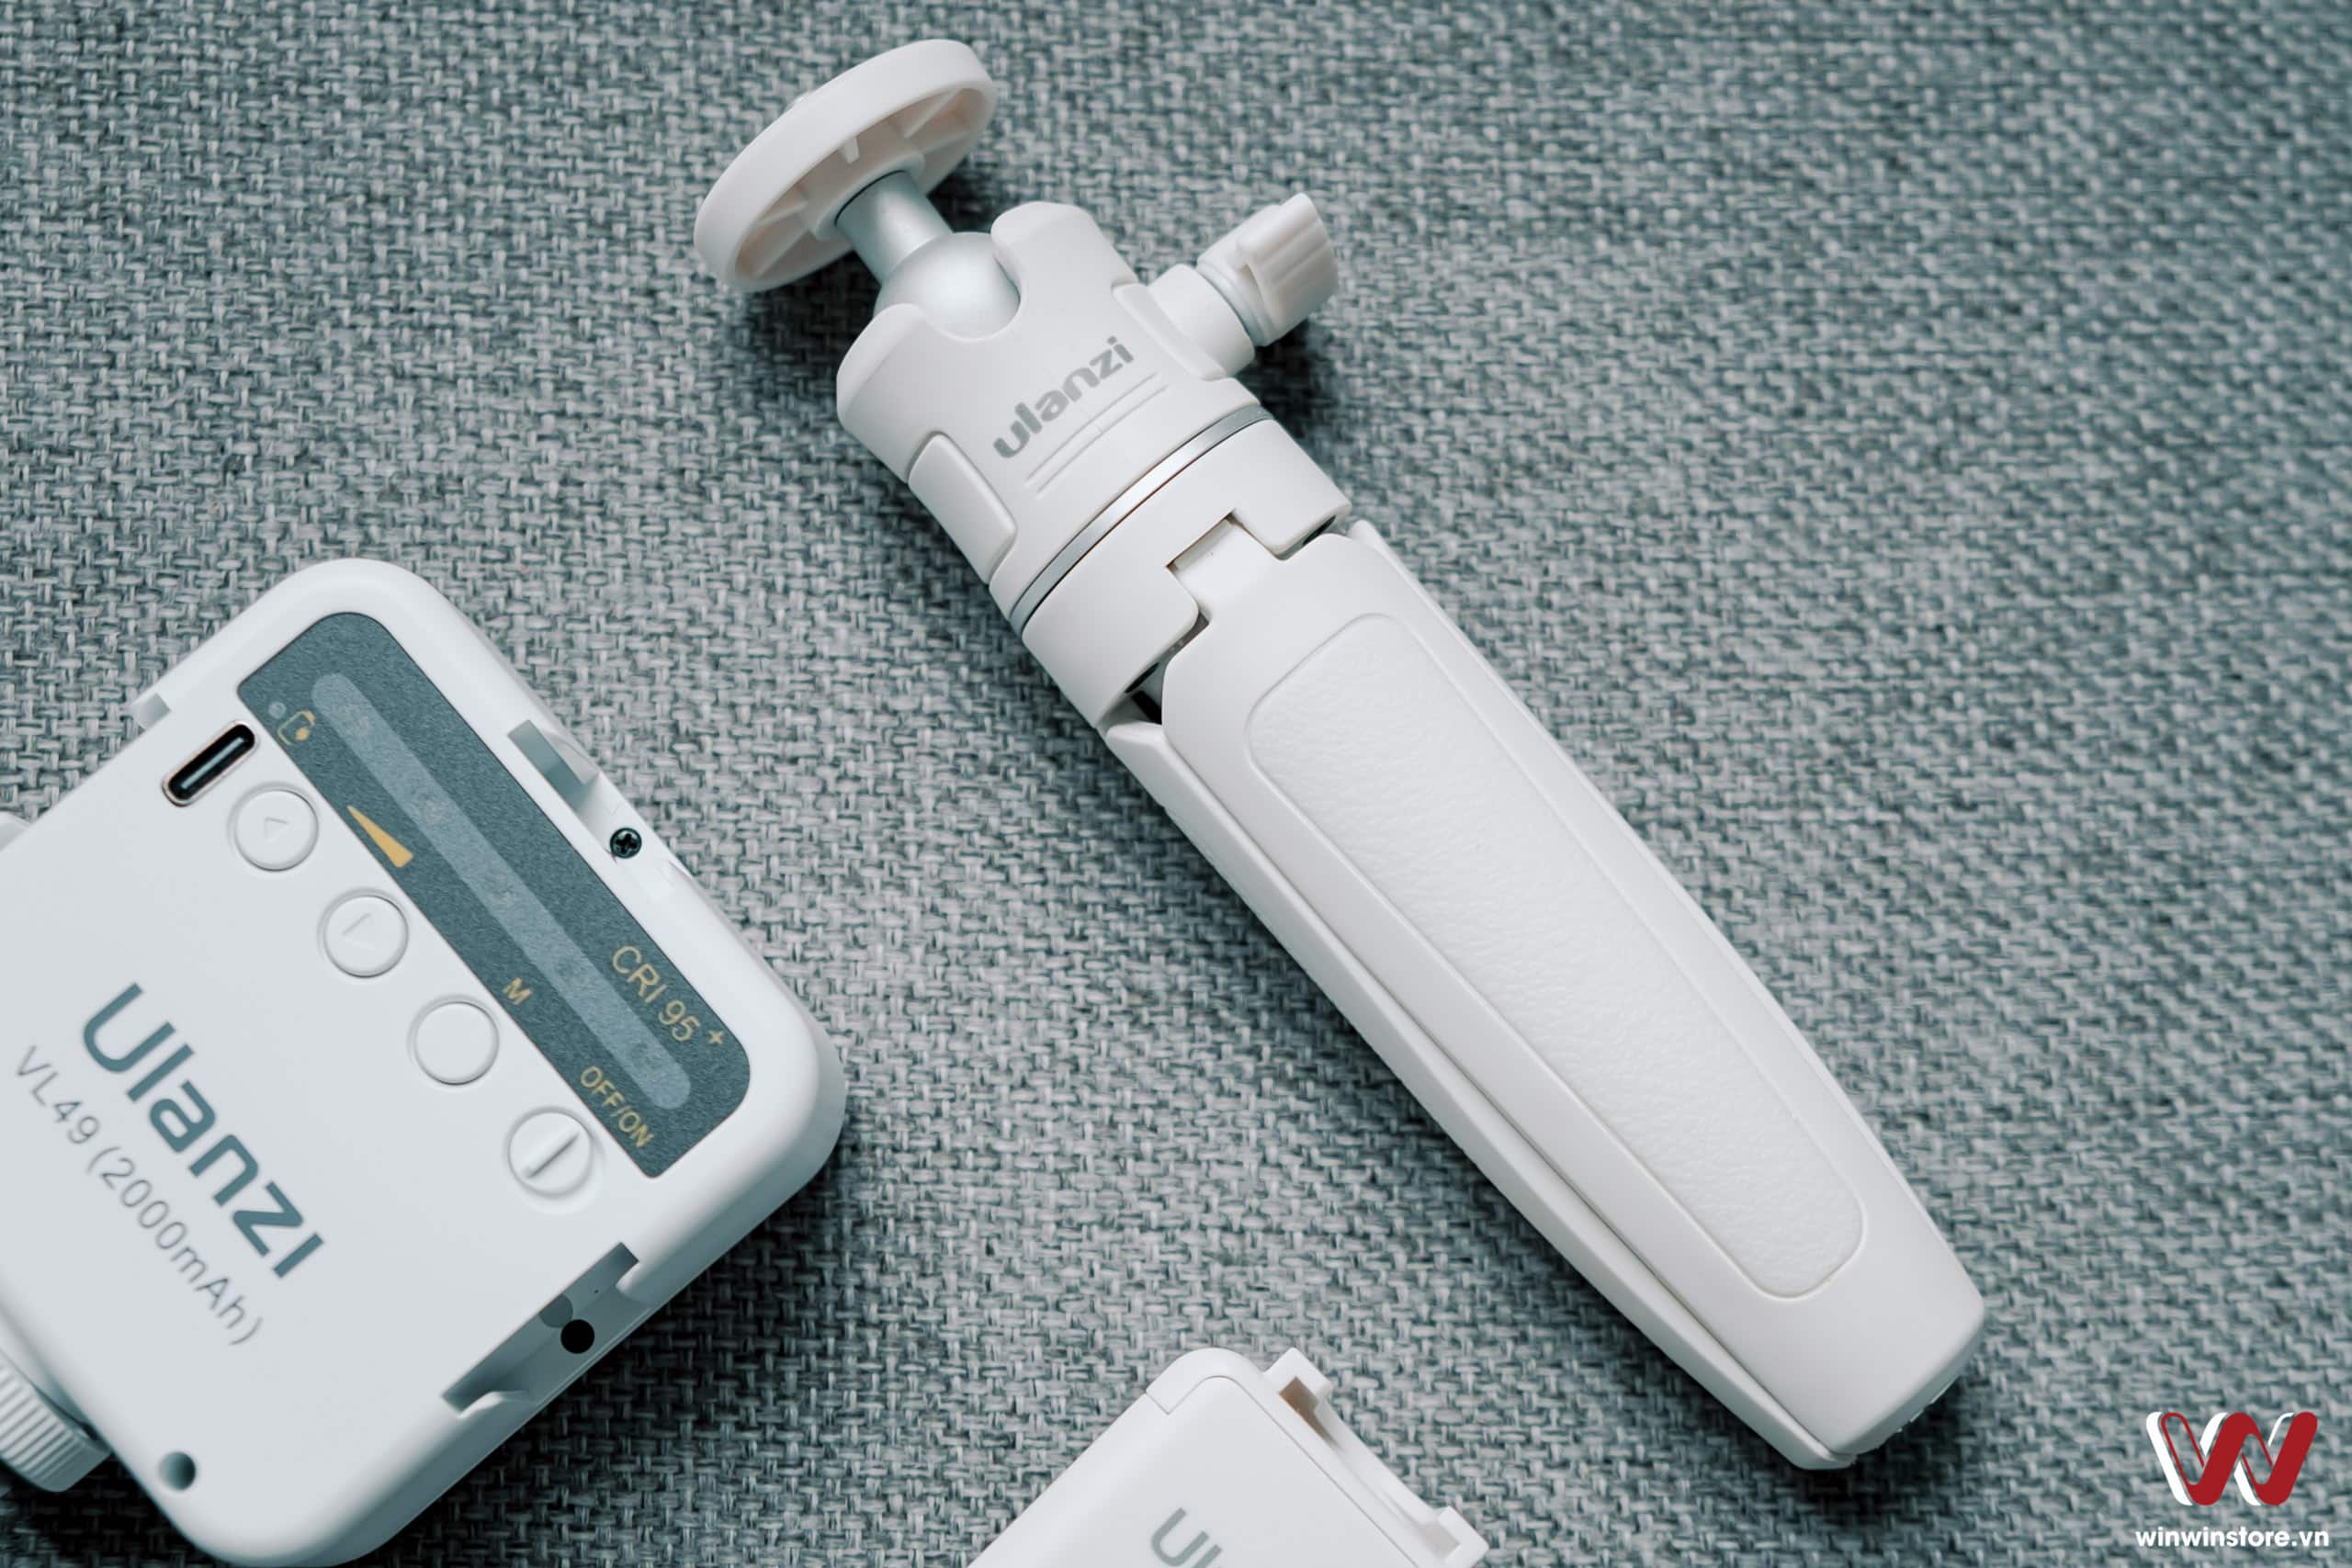 Trên tay bộ đèn LED Ulanzi trắng tinh khôi kèm chân máy và đế kẹp cho smartphone : Đầy đủ và đa dụng